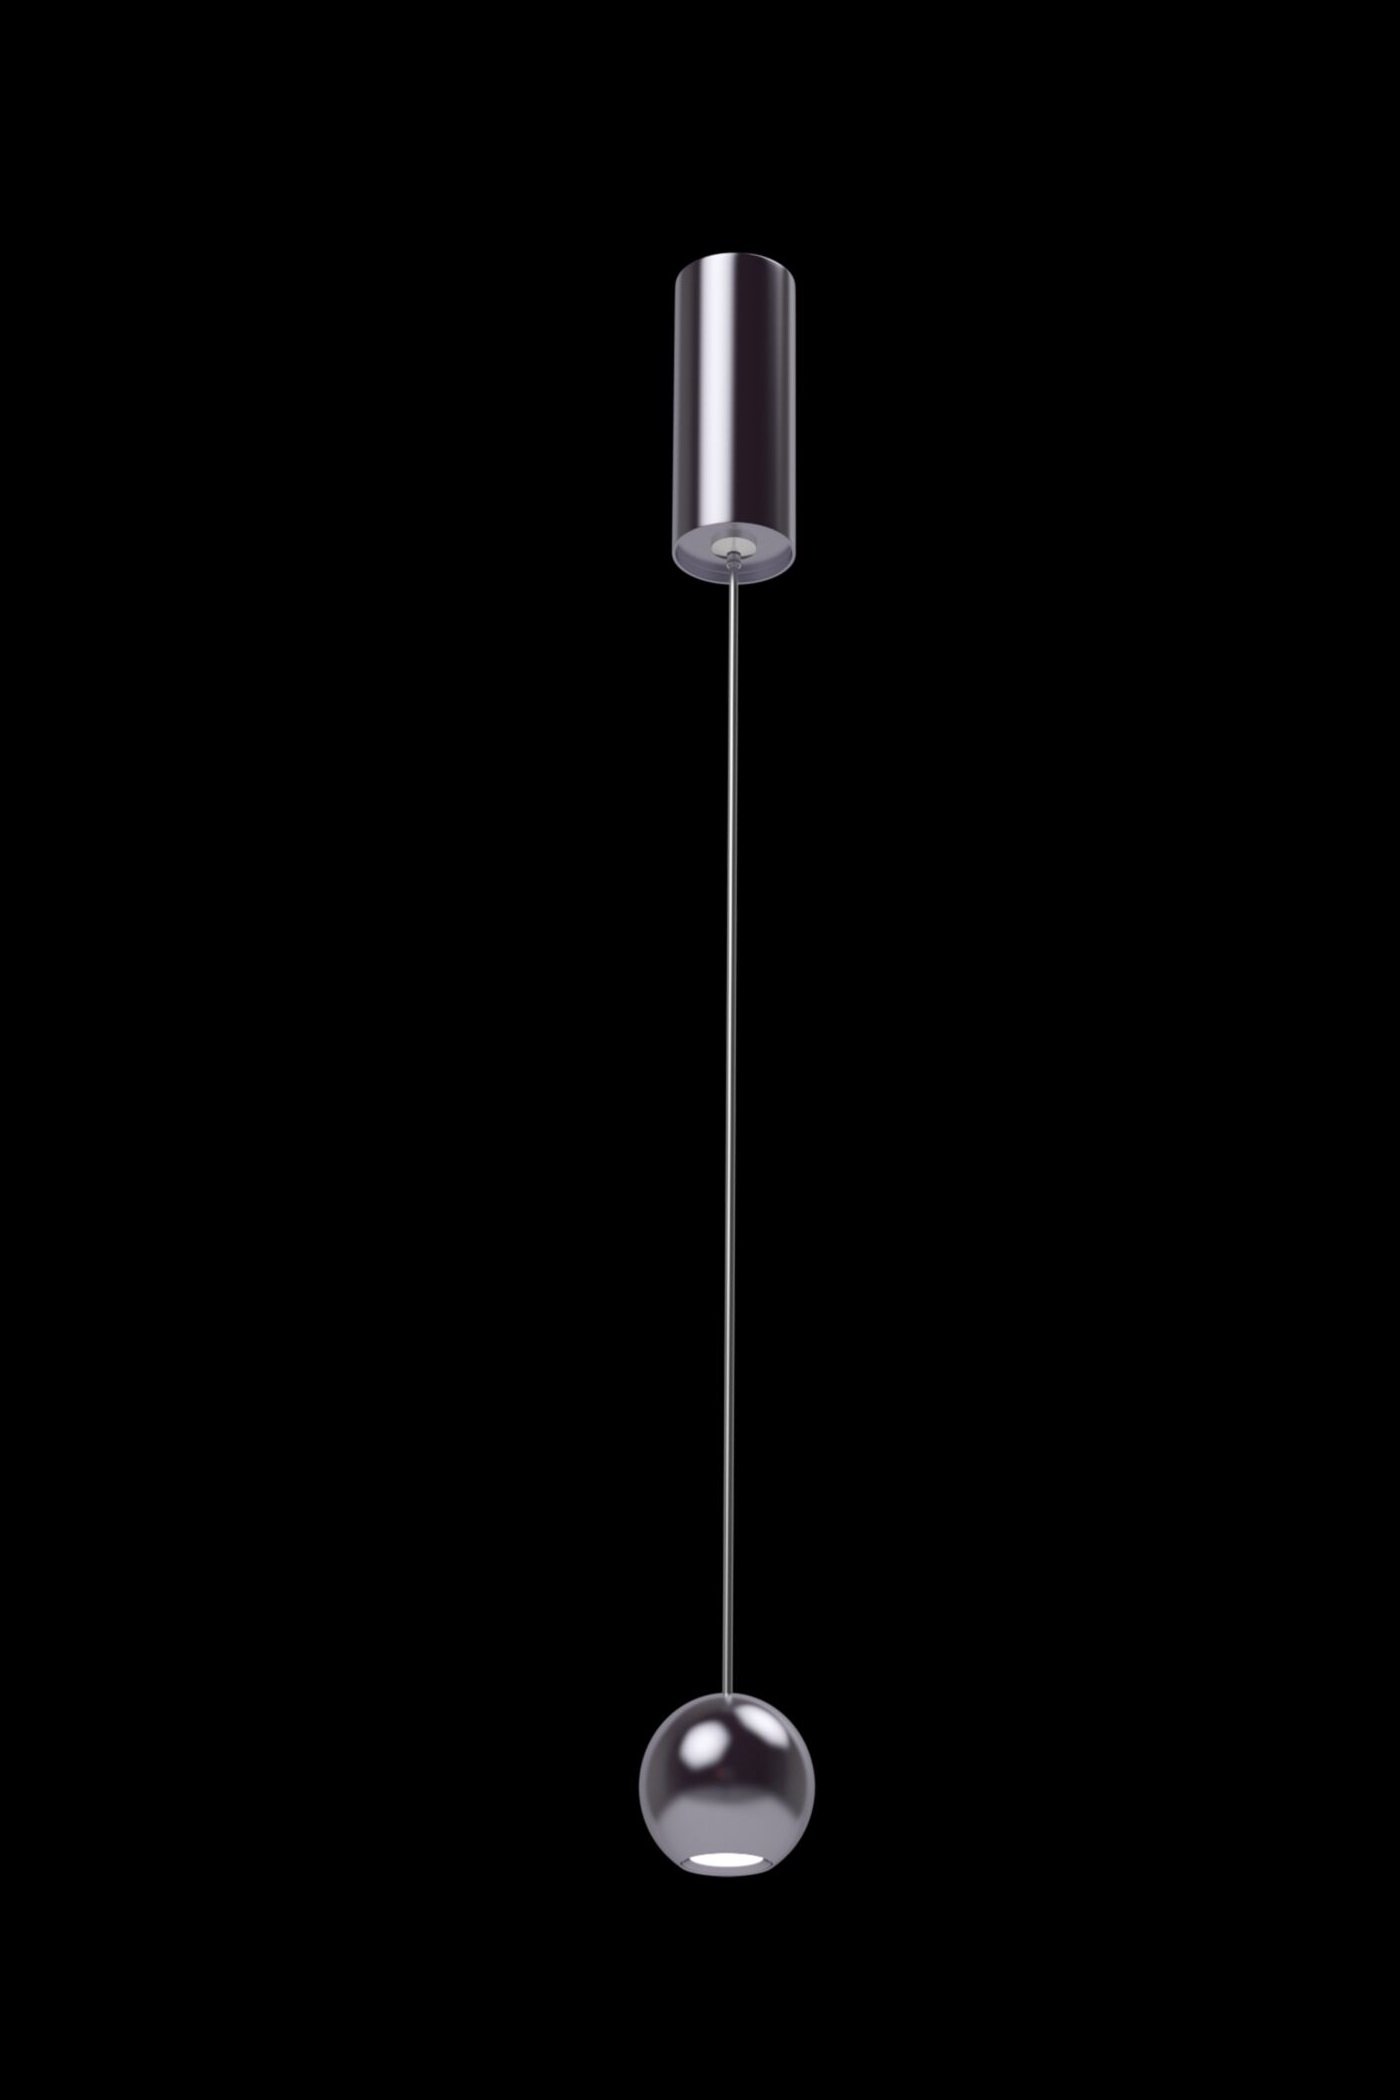   
                        Люстра MAYTONI (Німеччина) 29202    
                         у стилі хай-тек.  
                                                Форма: коло.                         Кольори плафонів і підвісок: сірий.                         Матеріал: метал.                          фото 4